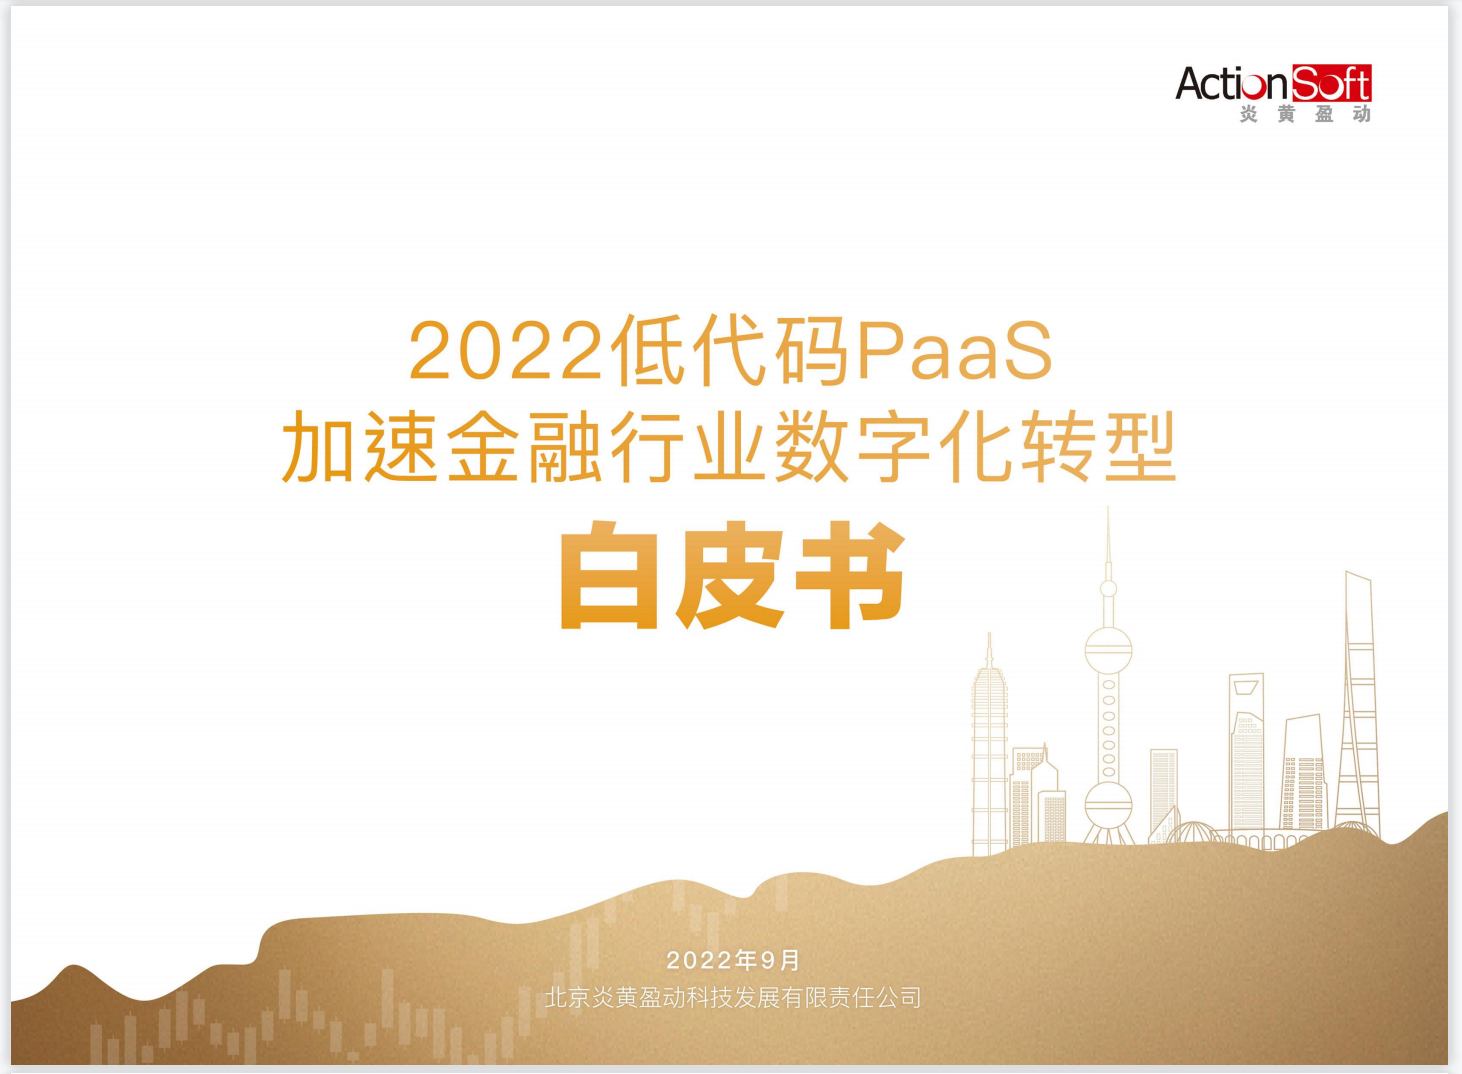 炎黃盈動重磅發布《2022低代碼PaaS加速金融行業數字化轉型白皮書》